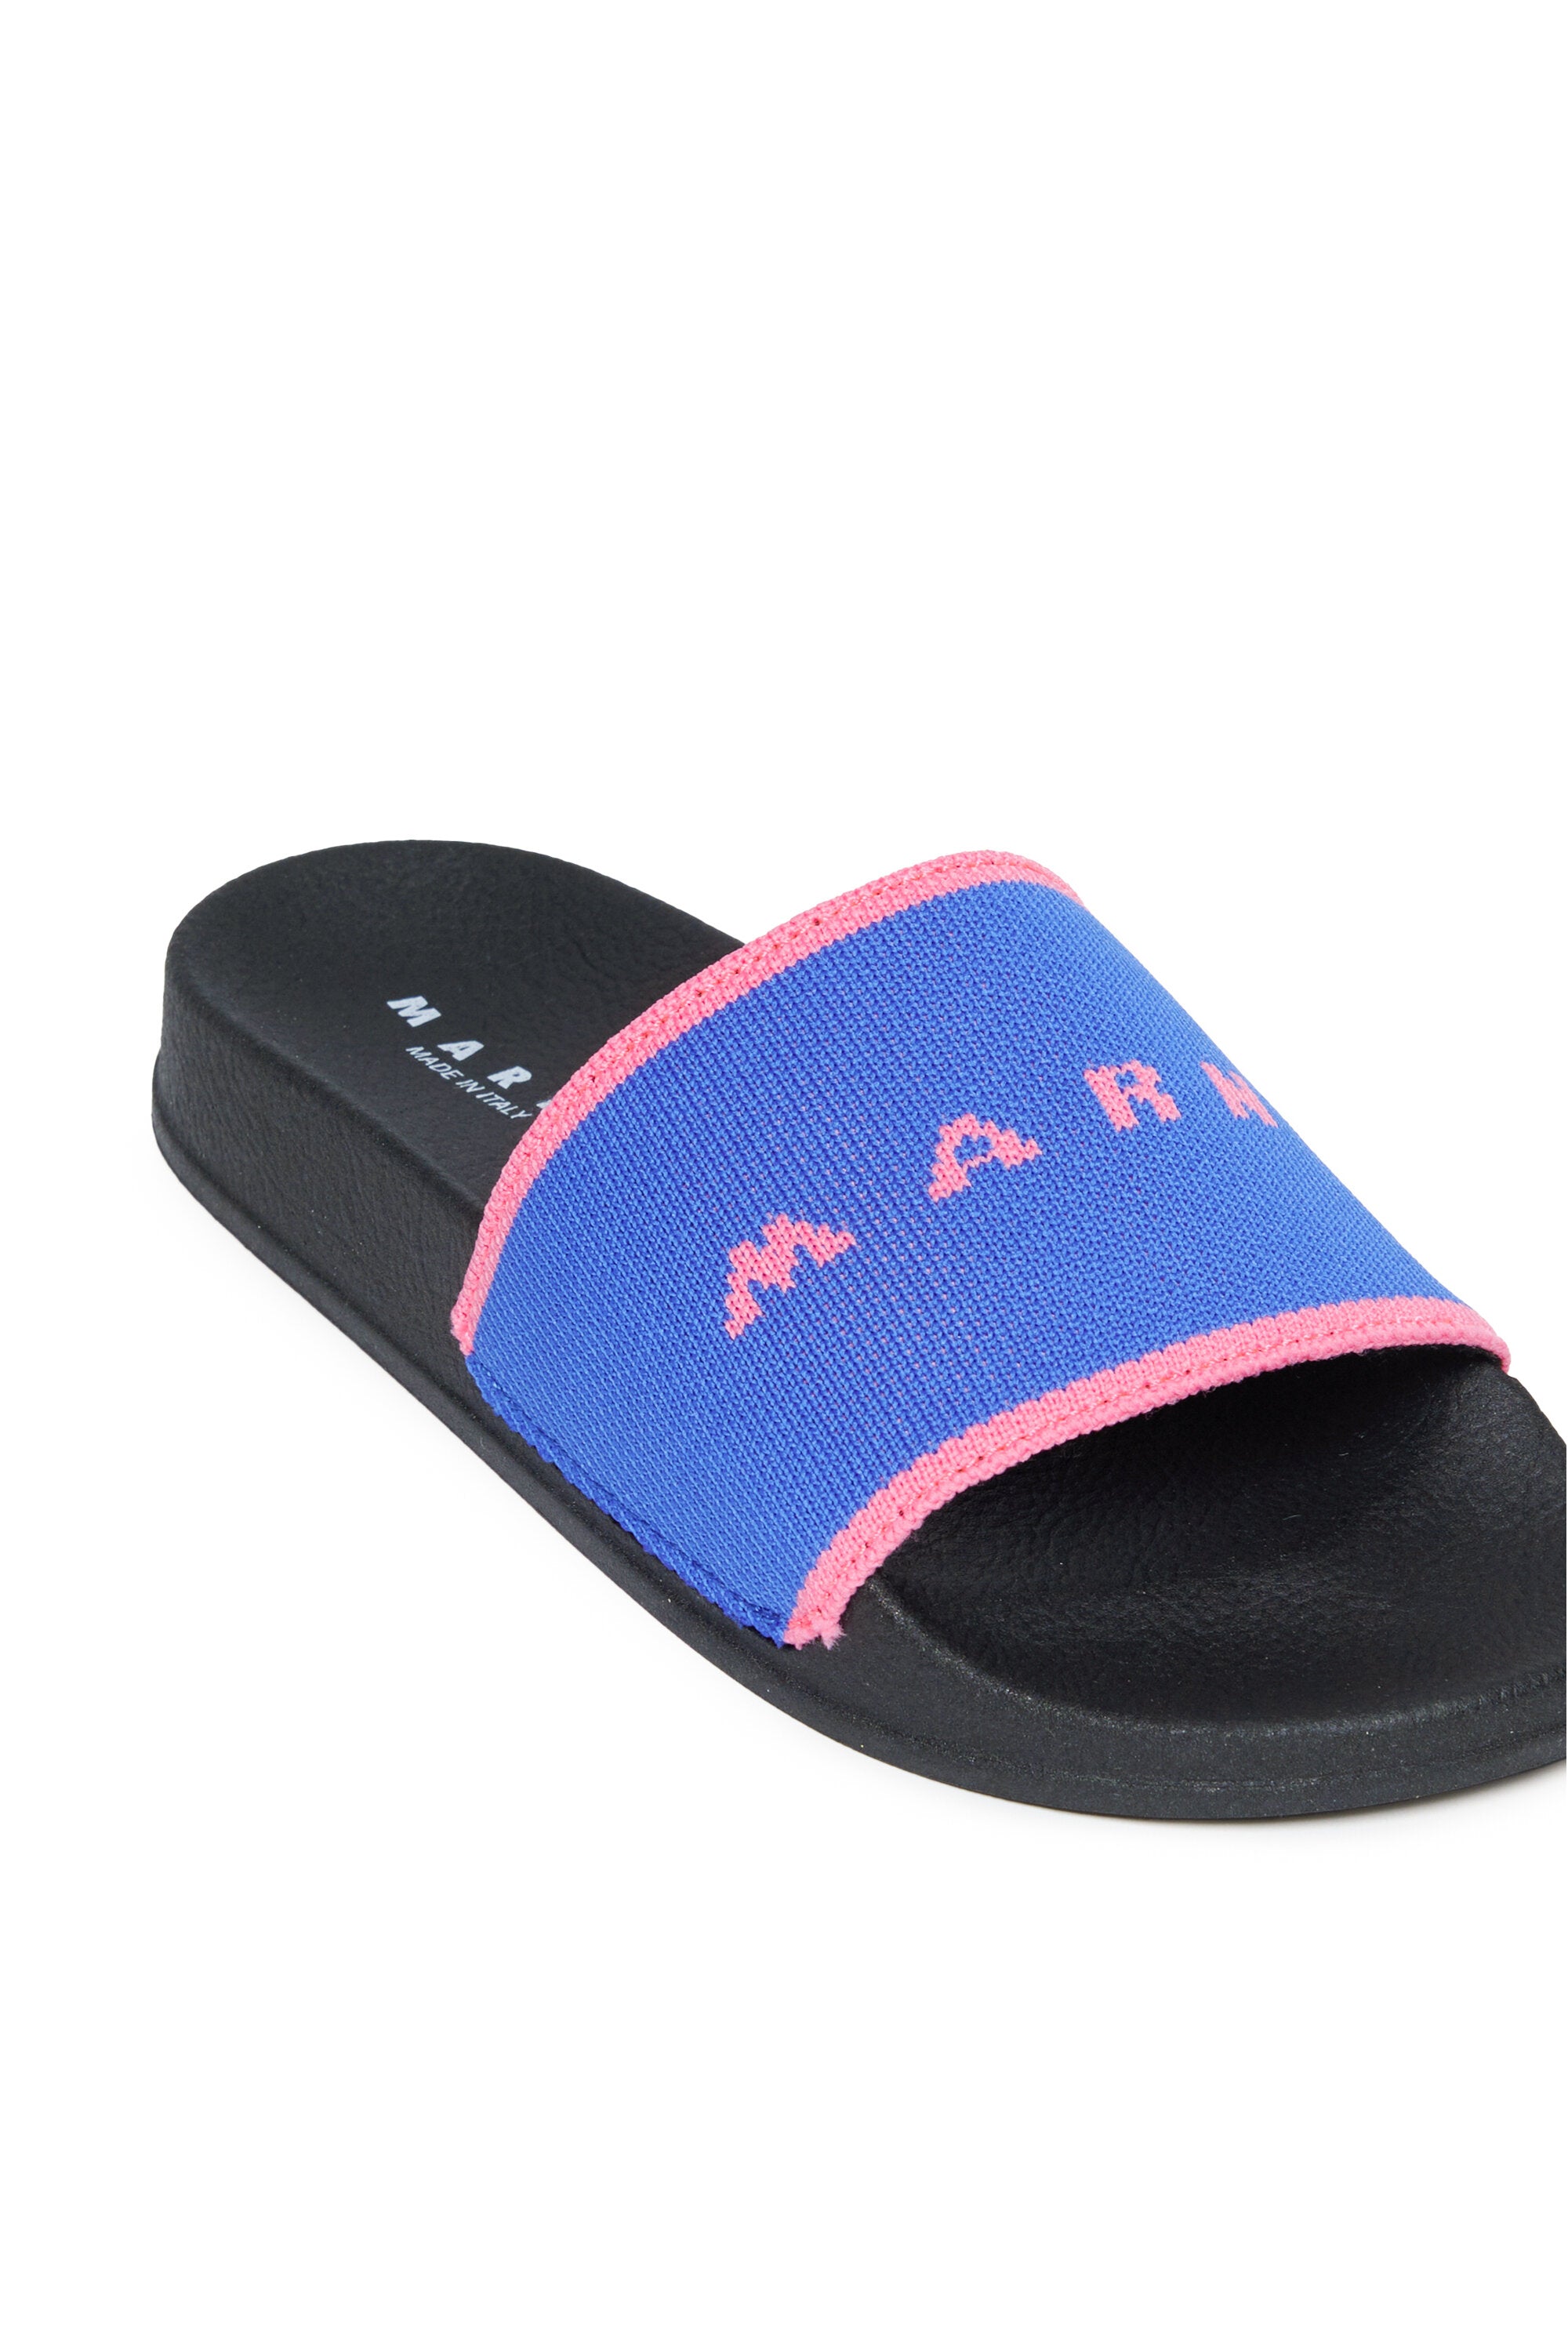 Branded fabric slide slippers